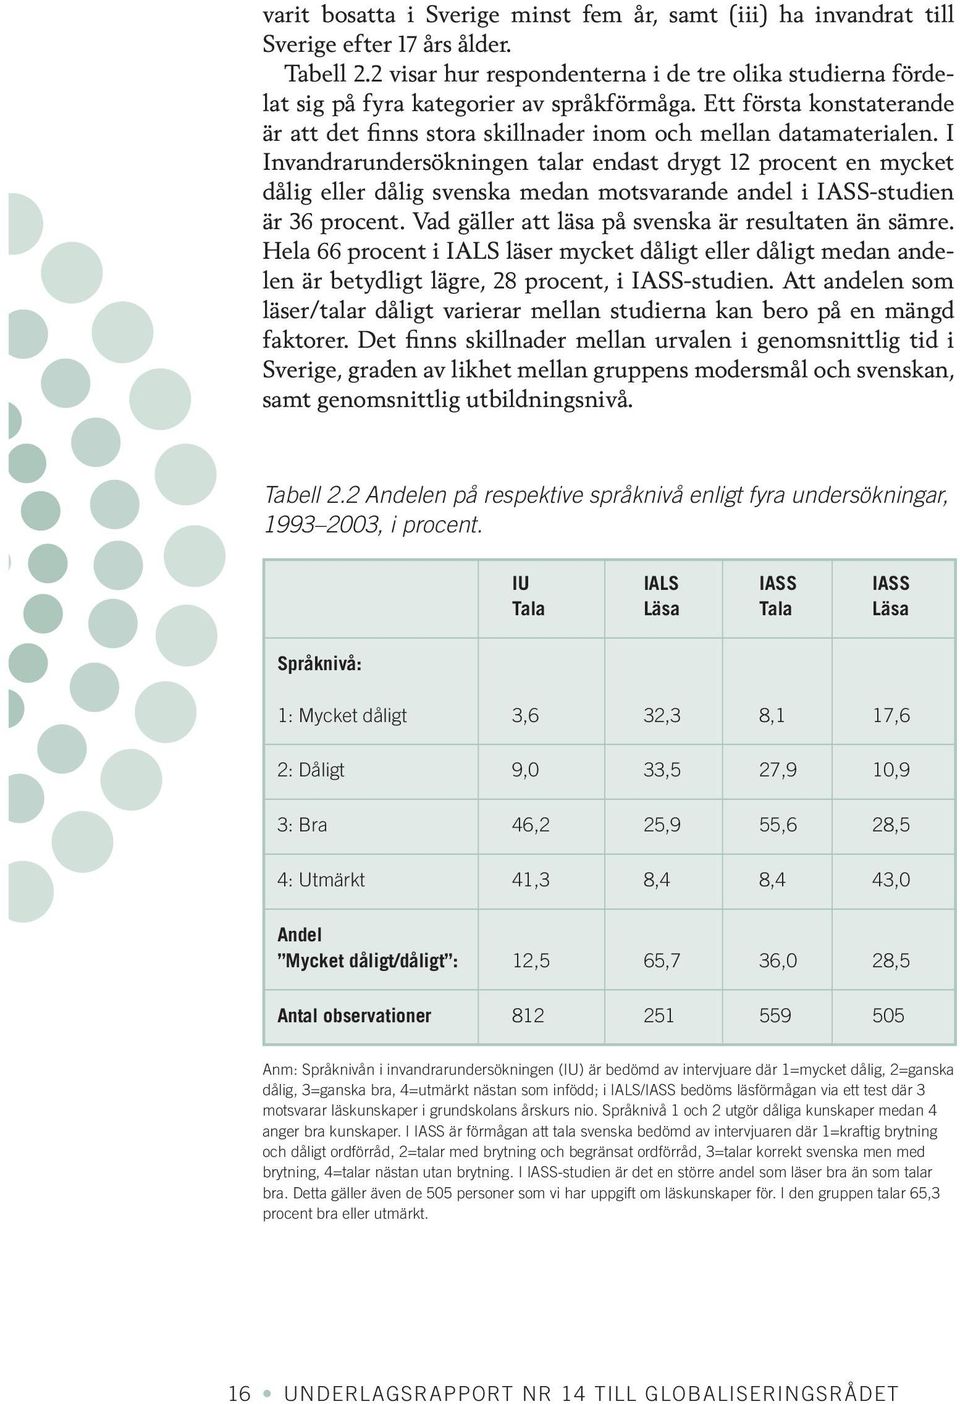 I Invandrarundersökningen talar endast drygt 12 procent en mycket dålig eller dålig svenska medan motsvarande andel i IASS-studien är 36 procent. Vad gäller att läsa på svenska är resultaten än sämre.